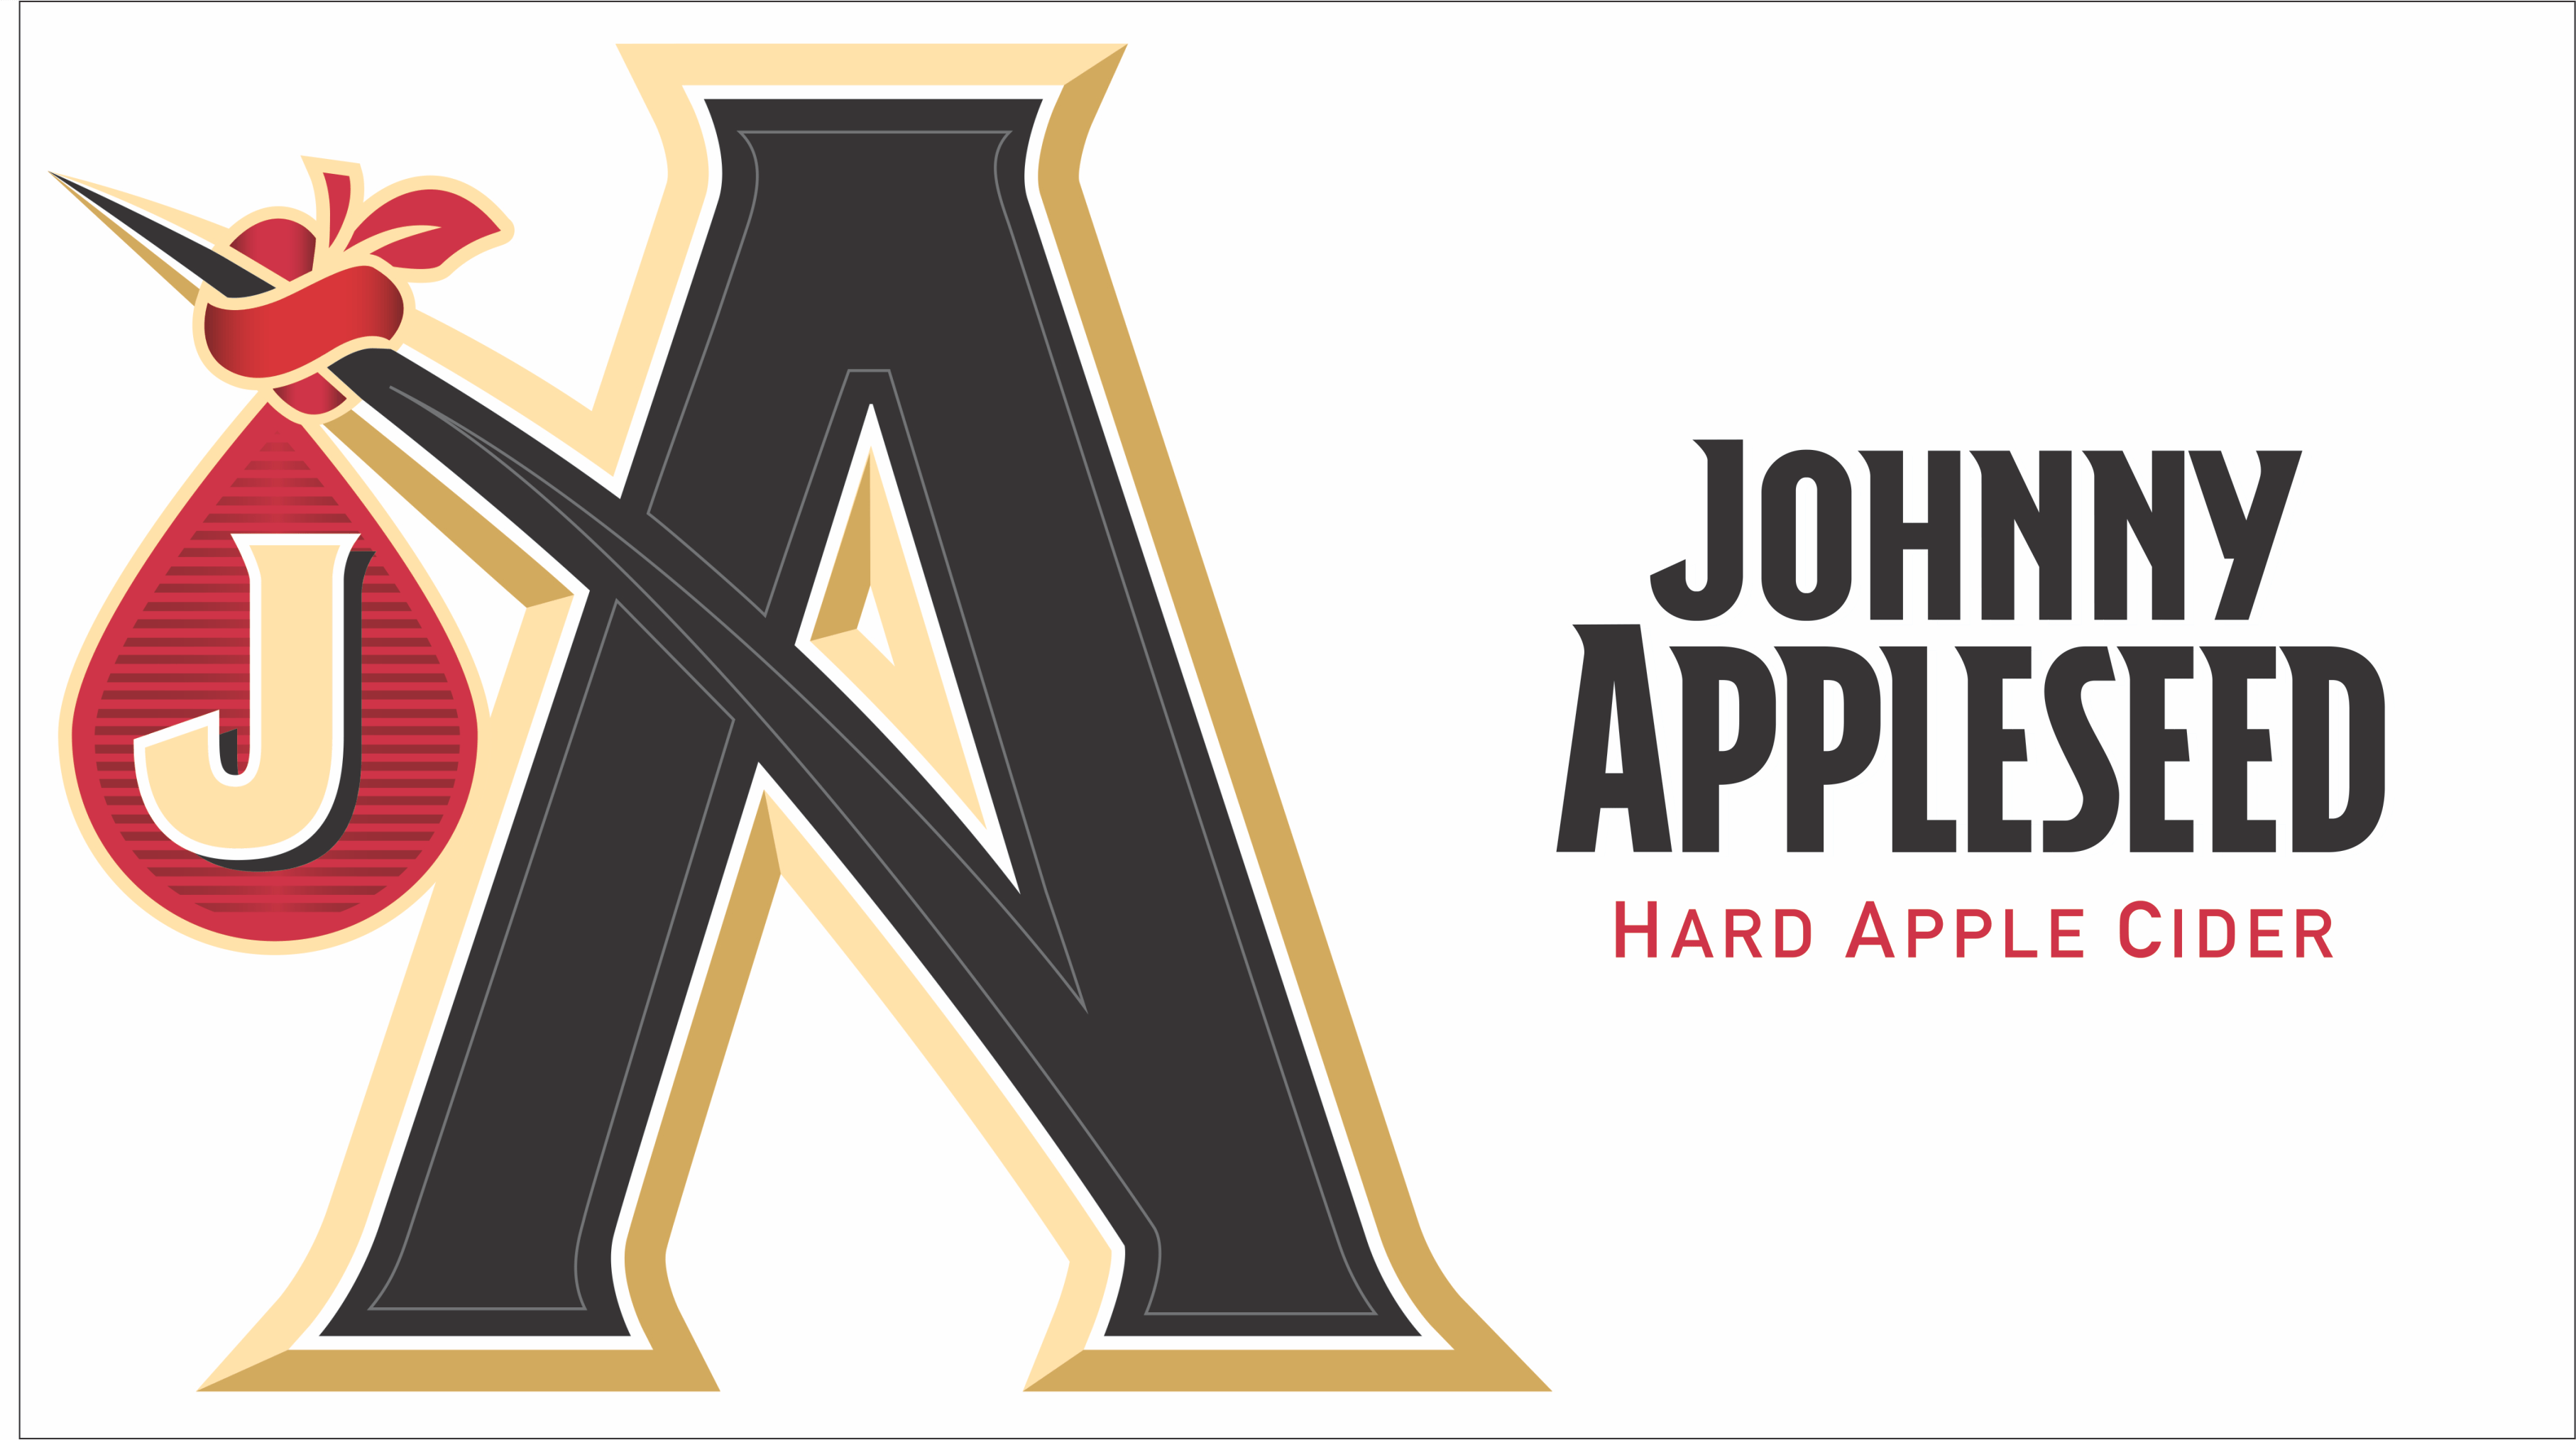 Johnny Appleseed Logo - Johnny appleseed Logos